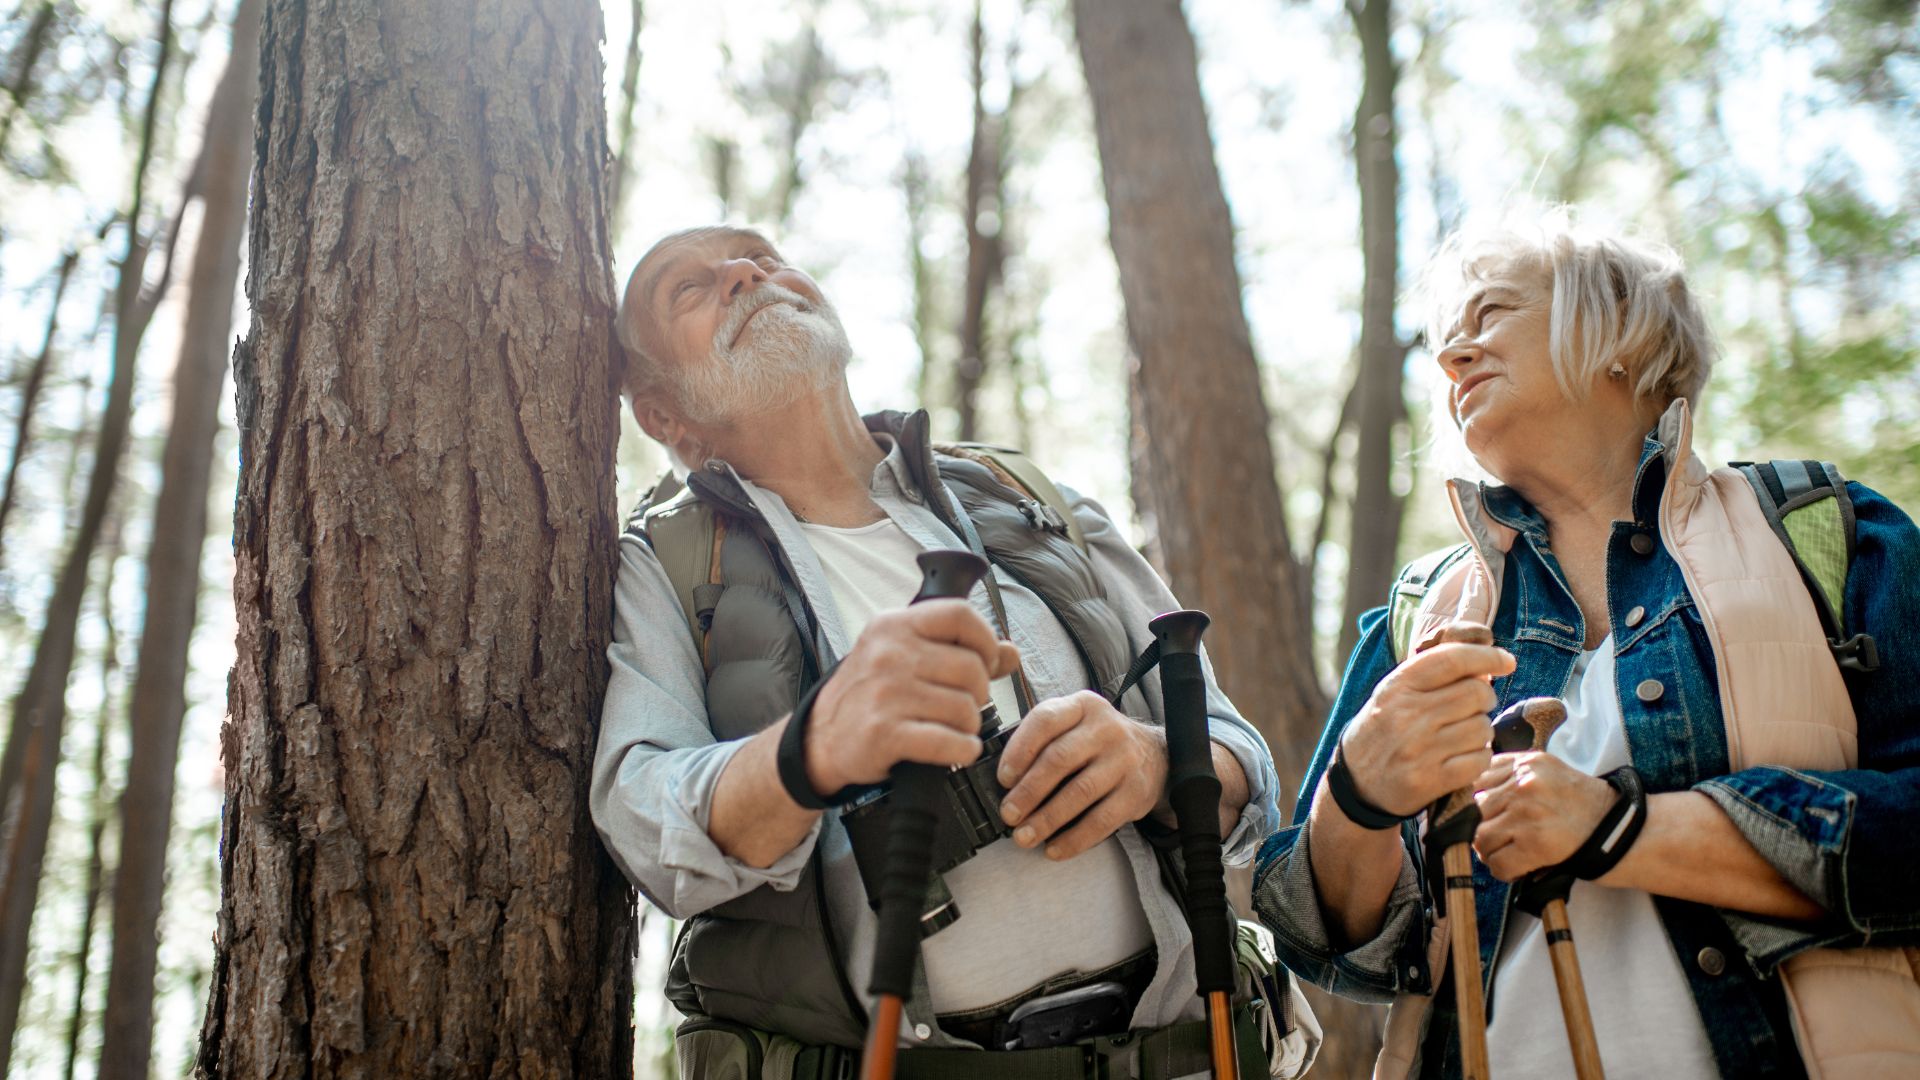 Invecchiamento attivo: l’escursionismo come stile di vita